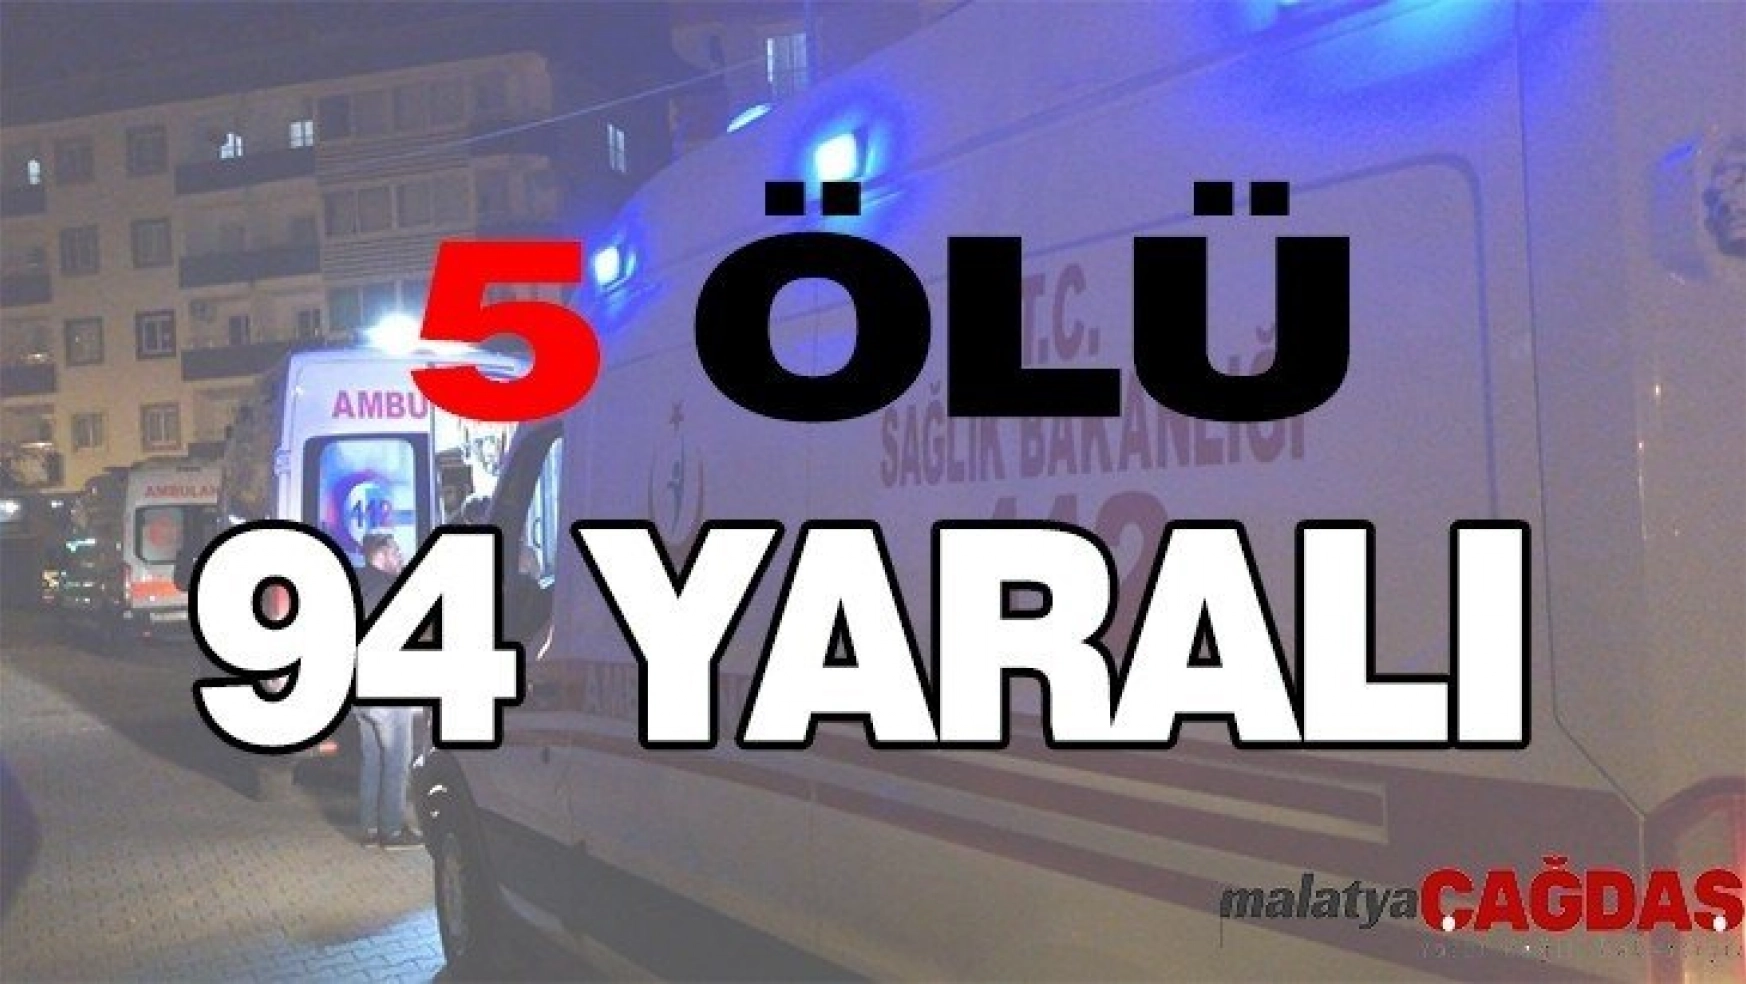 Malatya'da 5 ölü, 94 yaralı var